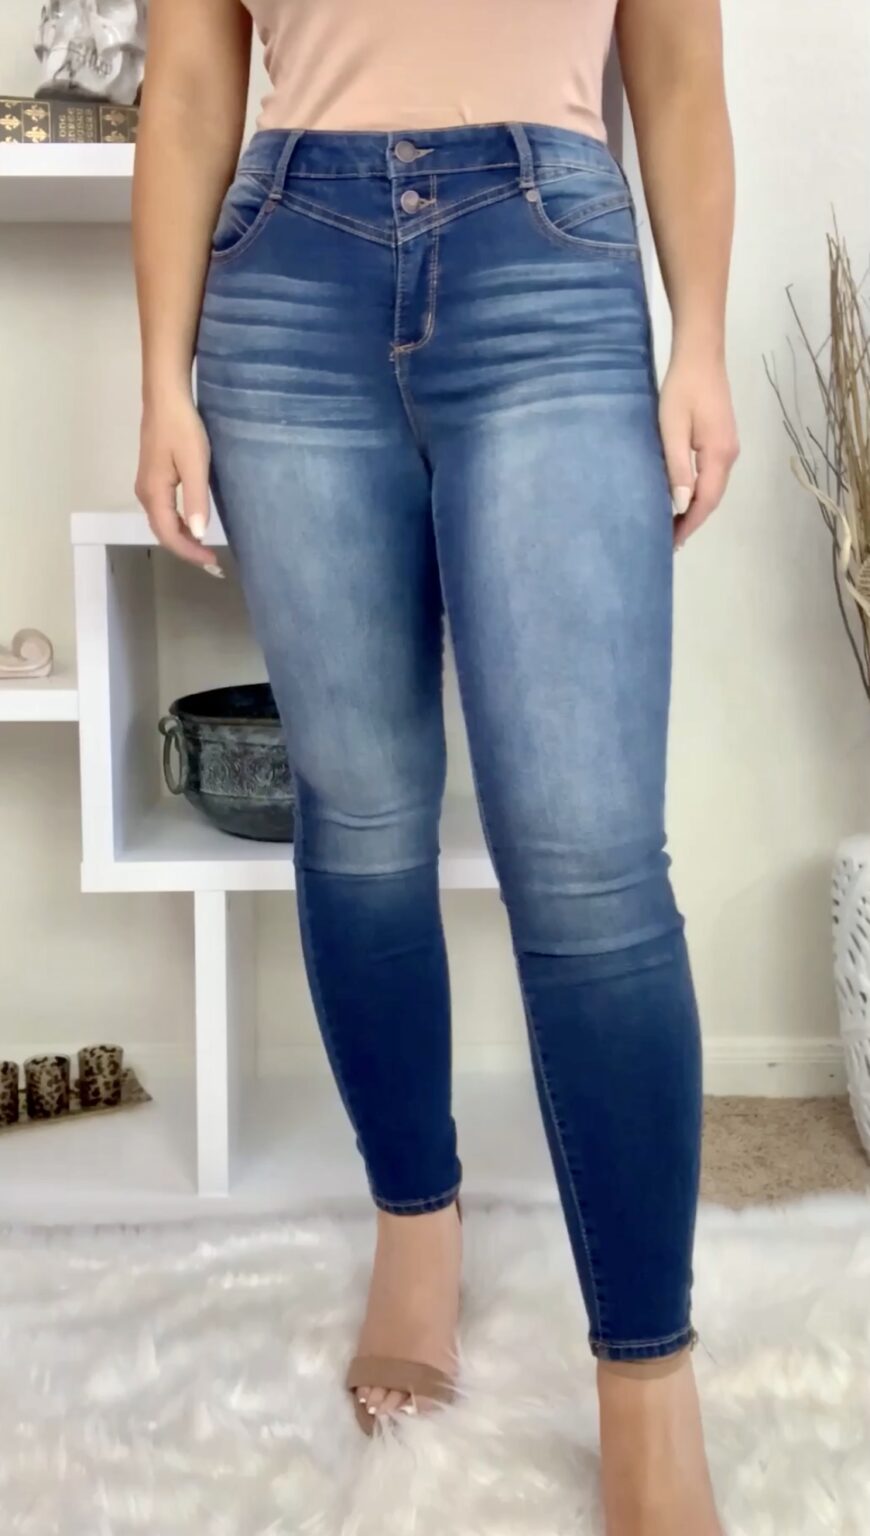 Sofia Vergara Jeans-Huge Try-on Walmart Haul | Madison Payne